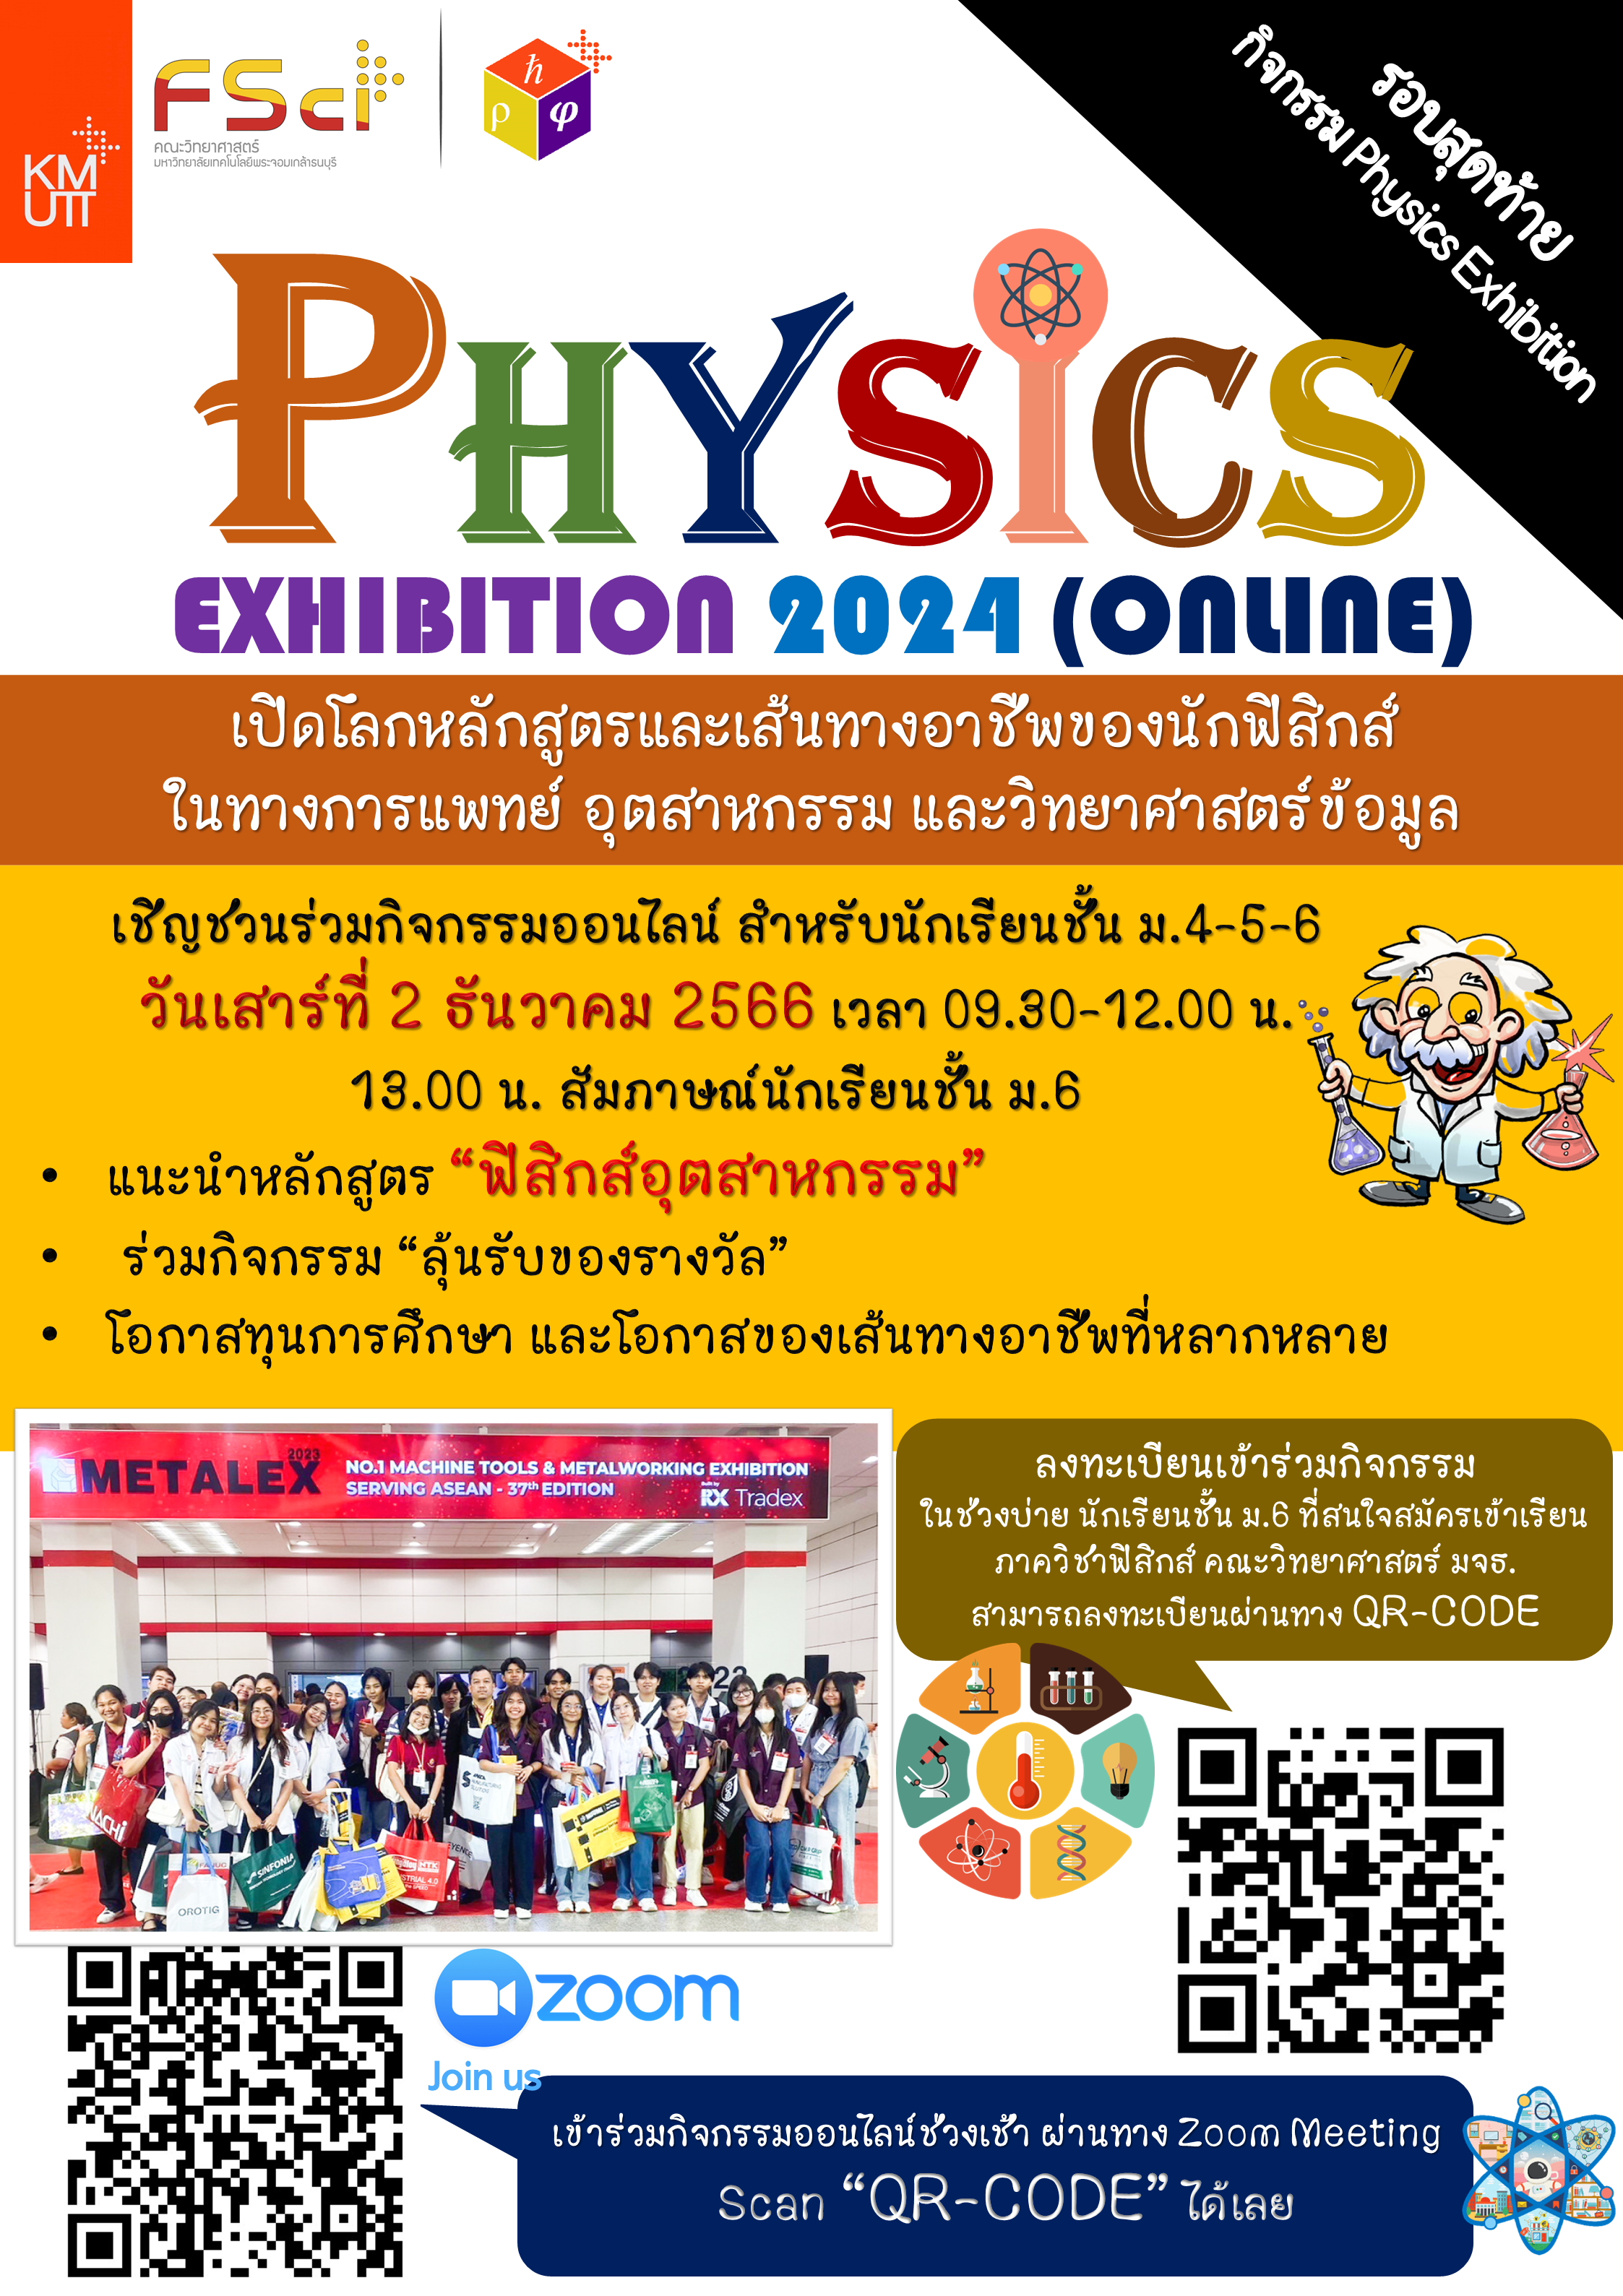  📍โครงการ Physics Exhibition 2024 (ออนไลน์)  📍ตอน "ฟิสิกส์อุตสาหกรรมและอาชีพที่เกี่ยวข้อง"  ขอเชิญชวนนักเรียนระดับชั้น ม.4-6 เข้าร่วมกิจกรรมออนไลน์ ในวันเสาร์ ที่ 2 ธันวาคม 2566